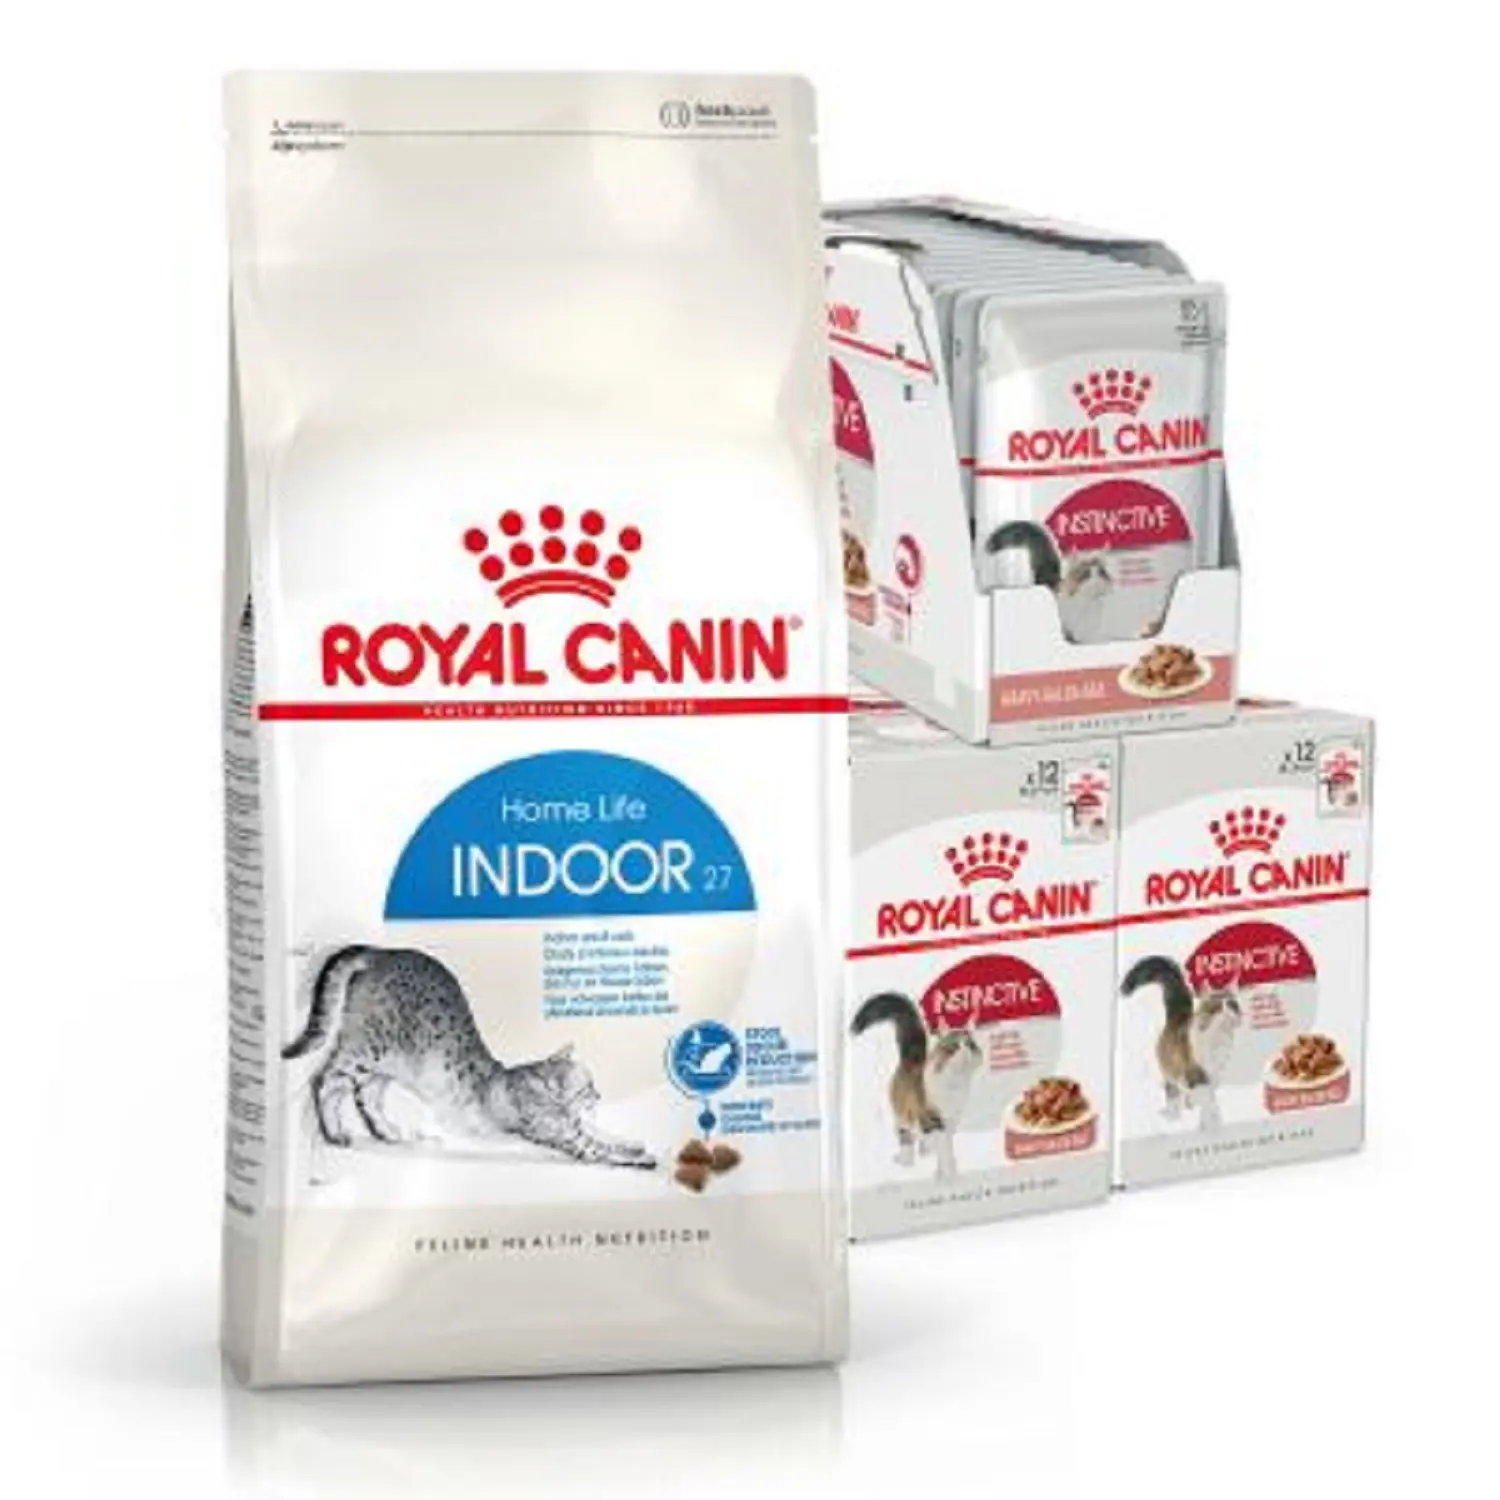 Royal Canin Fit 32 aliments secs pour chats et chiens en vente à bas prix